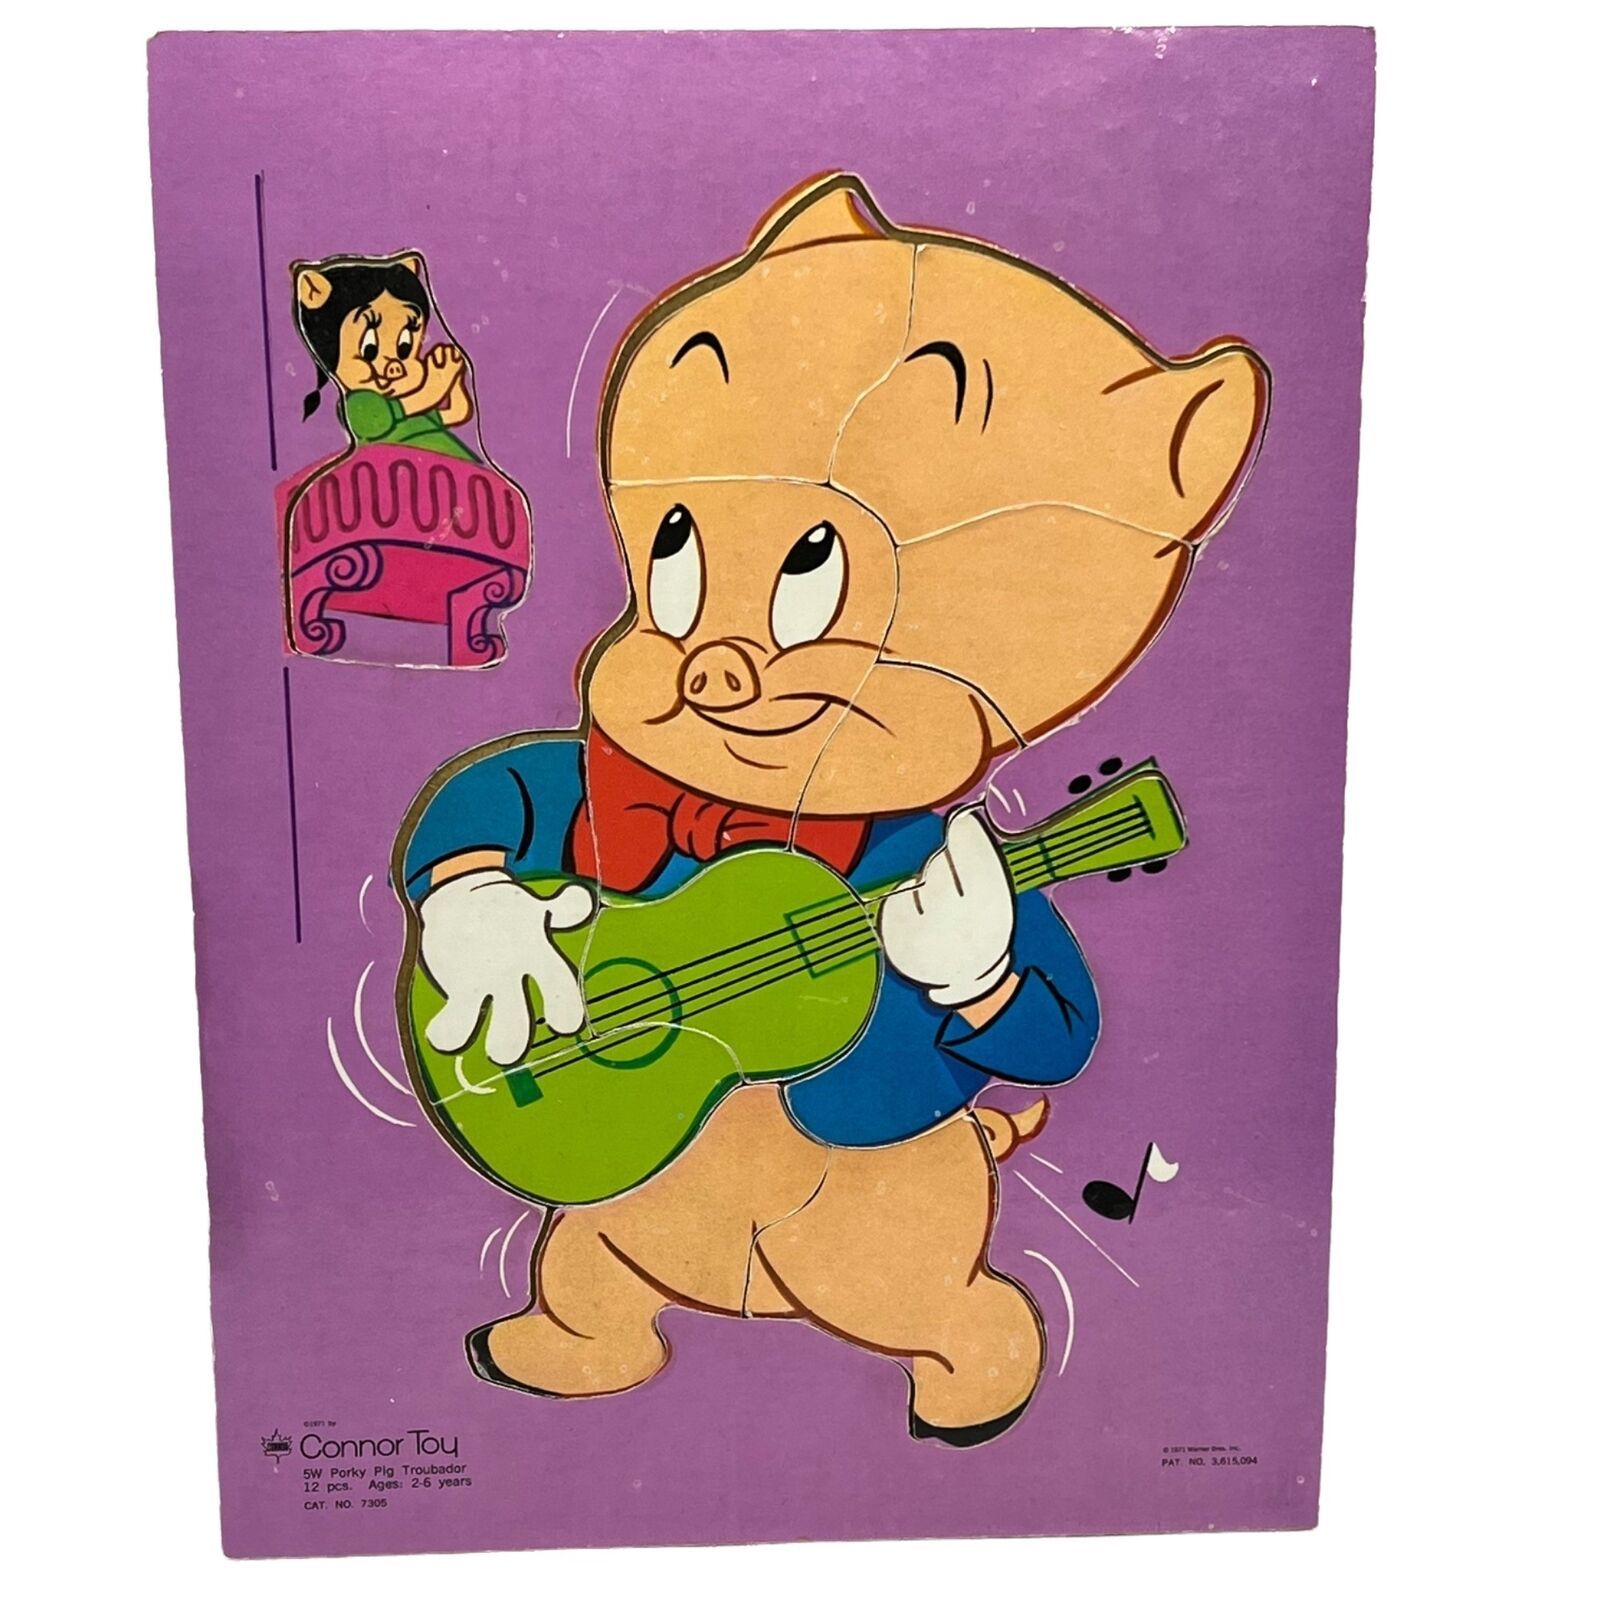 Connor Toy Porky Pig Troubador Warner Bros. 12 Pc. Wooden puzzle - $11.52